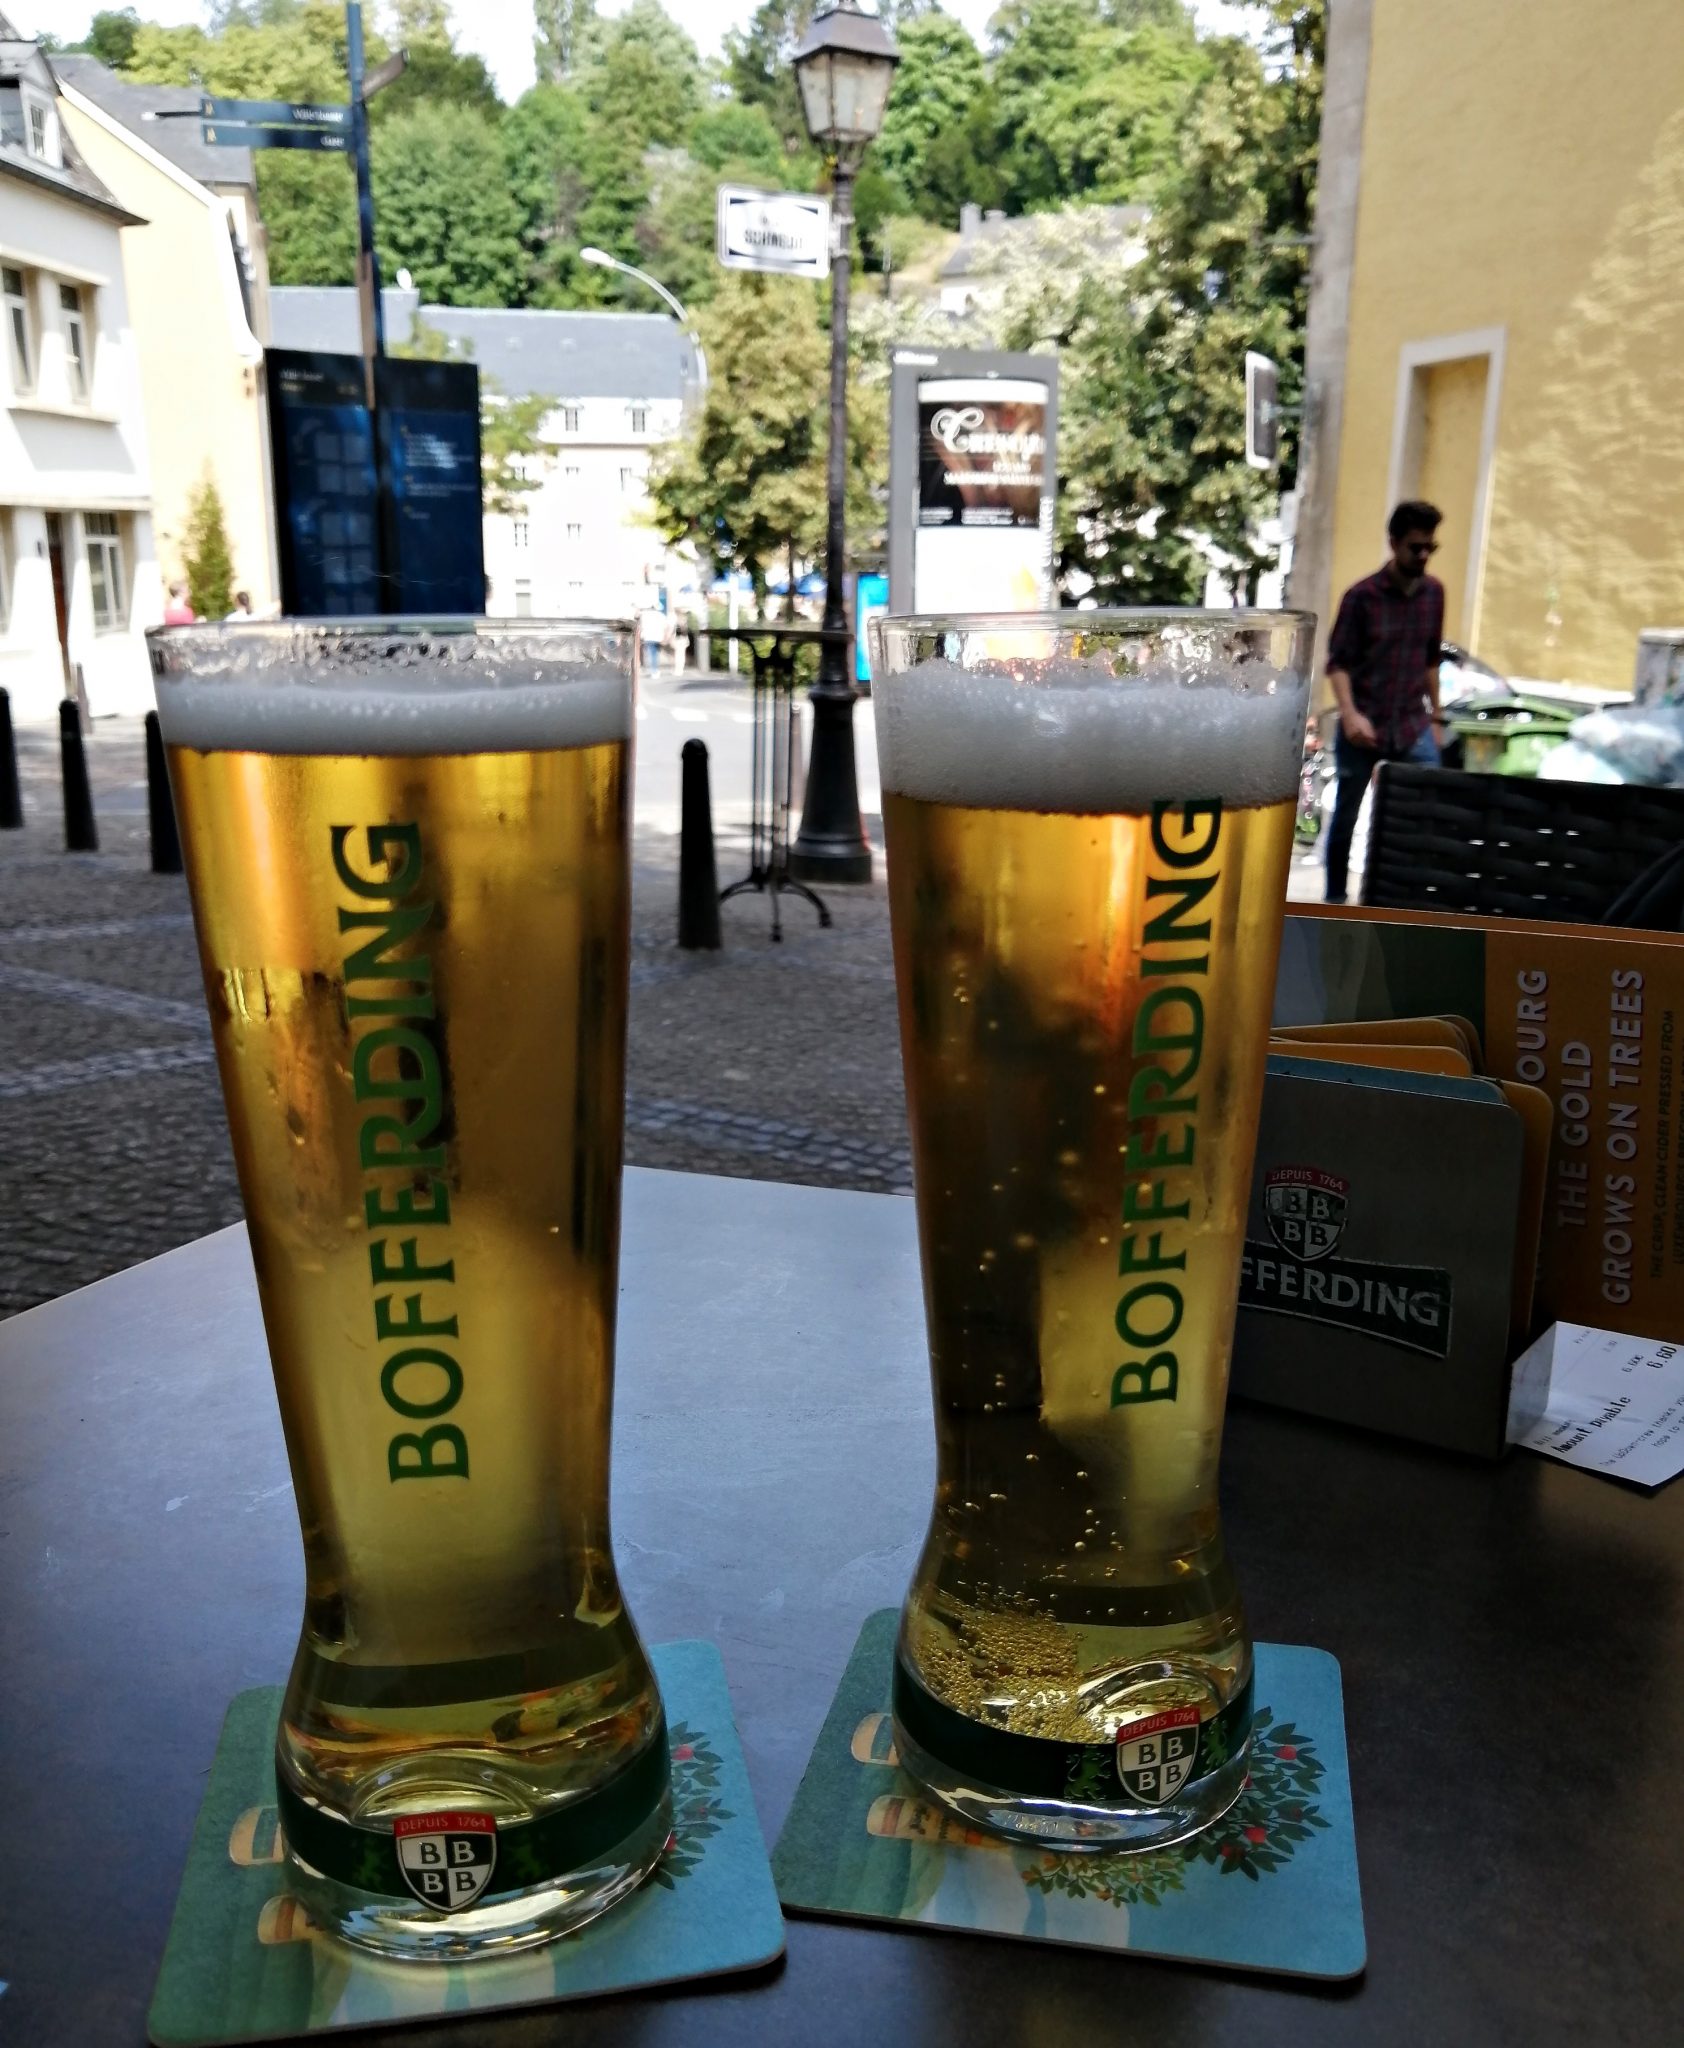 Bofferding beer, lokalno Luksemburško pivo! 1 dan u luksemburgu